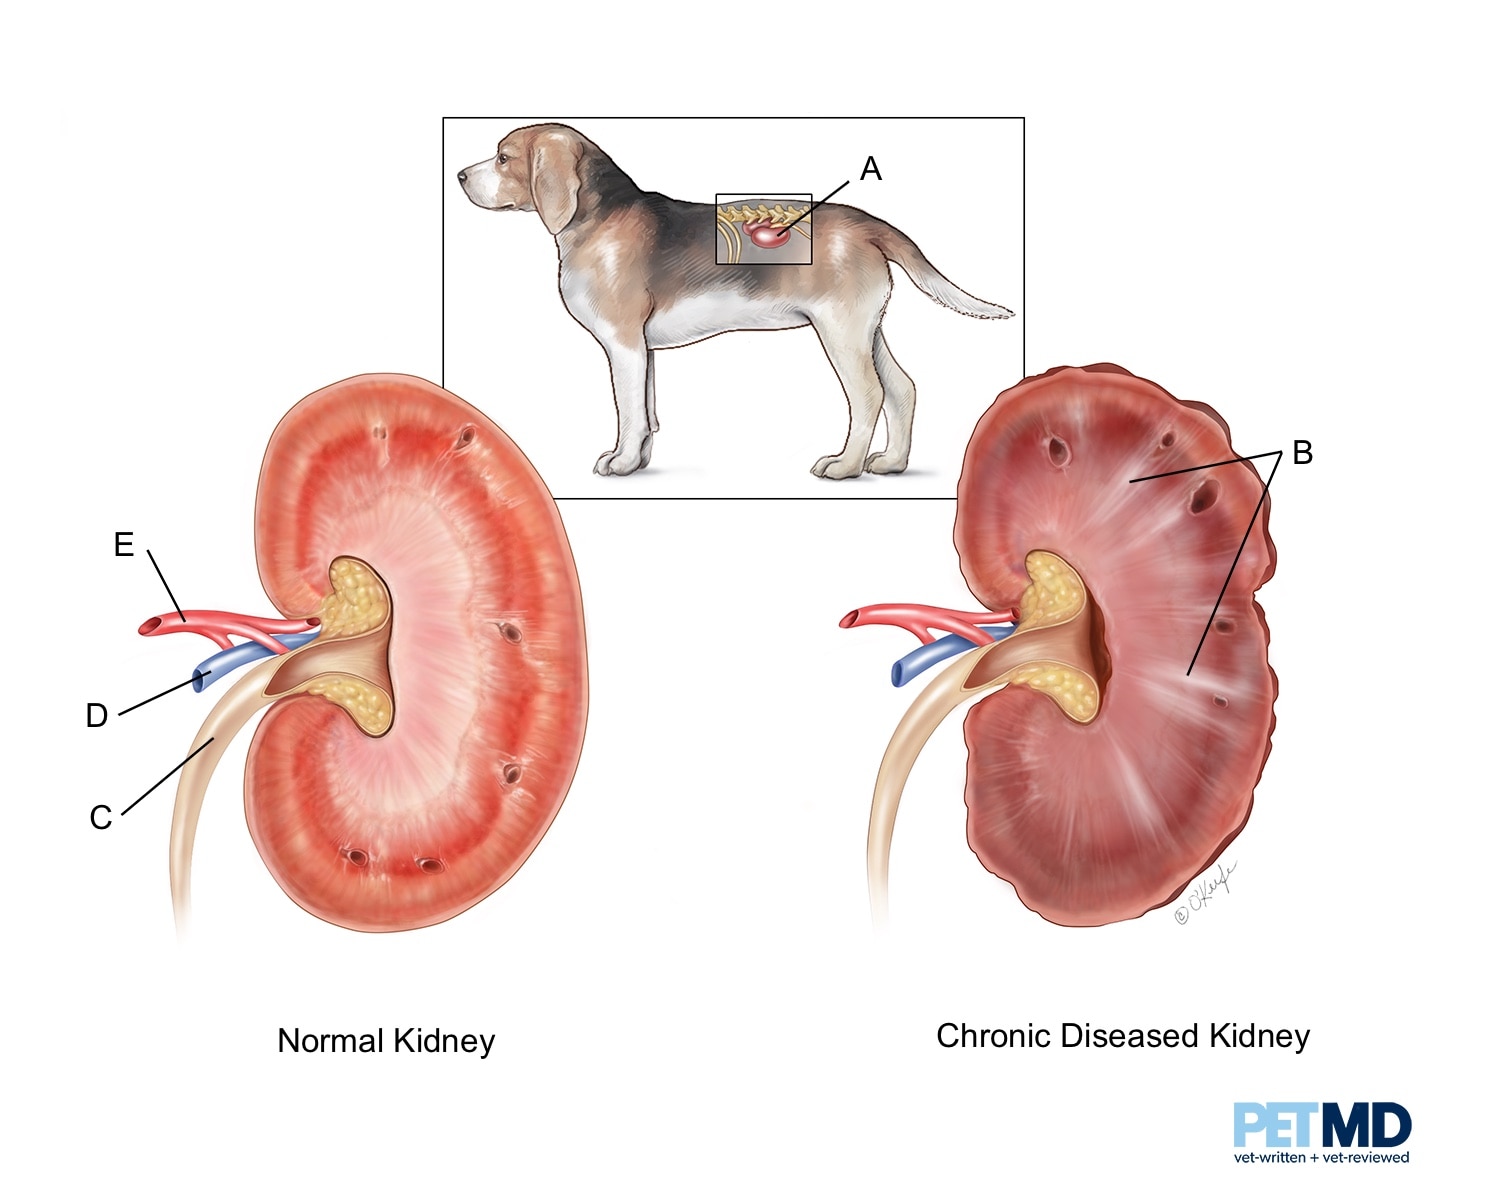 is kidney disease in dogs treatable